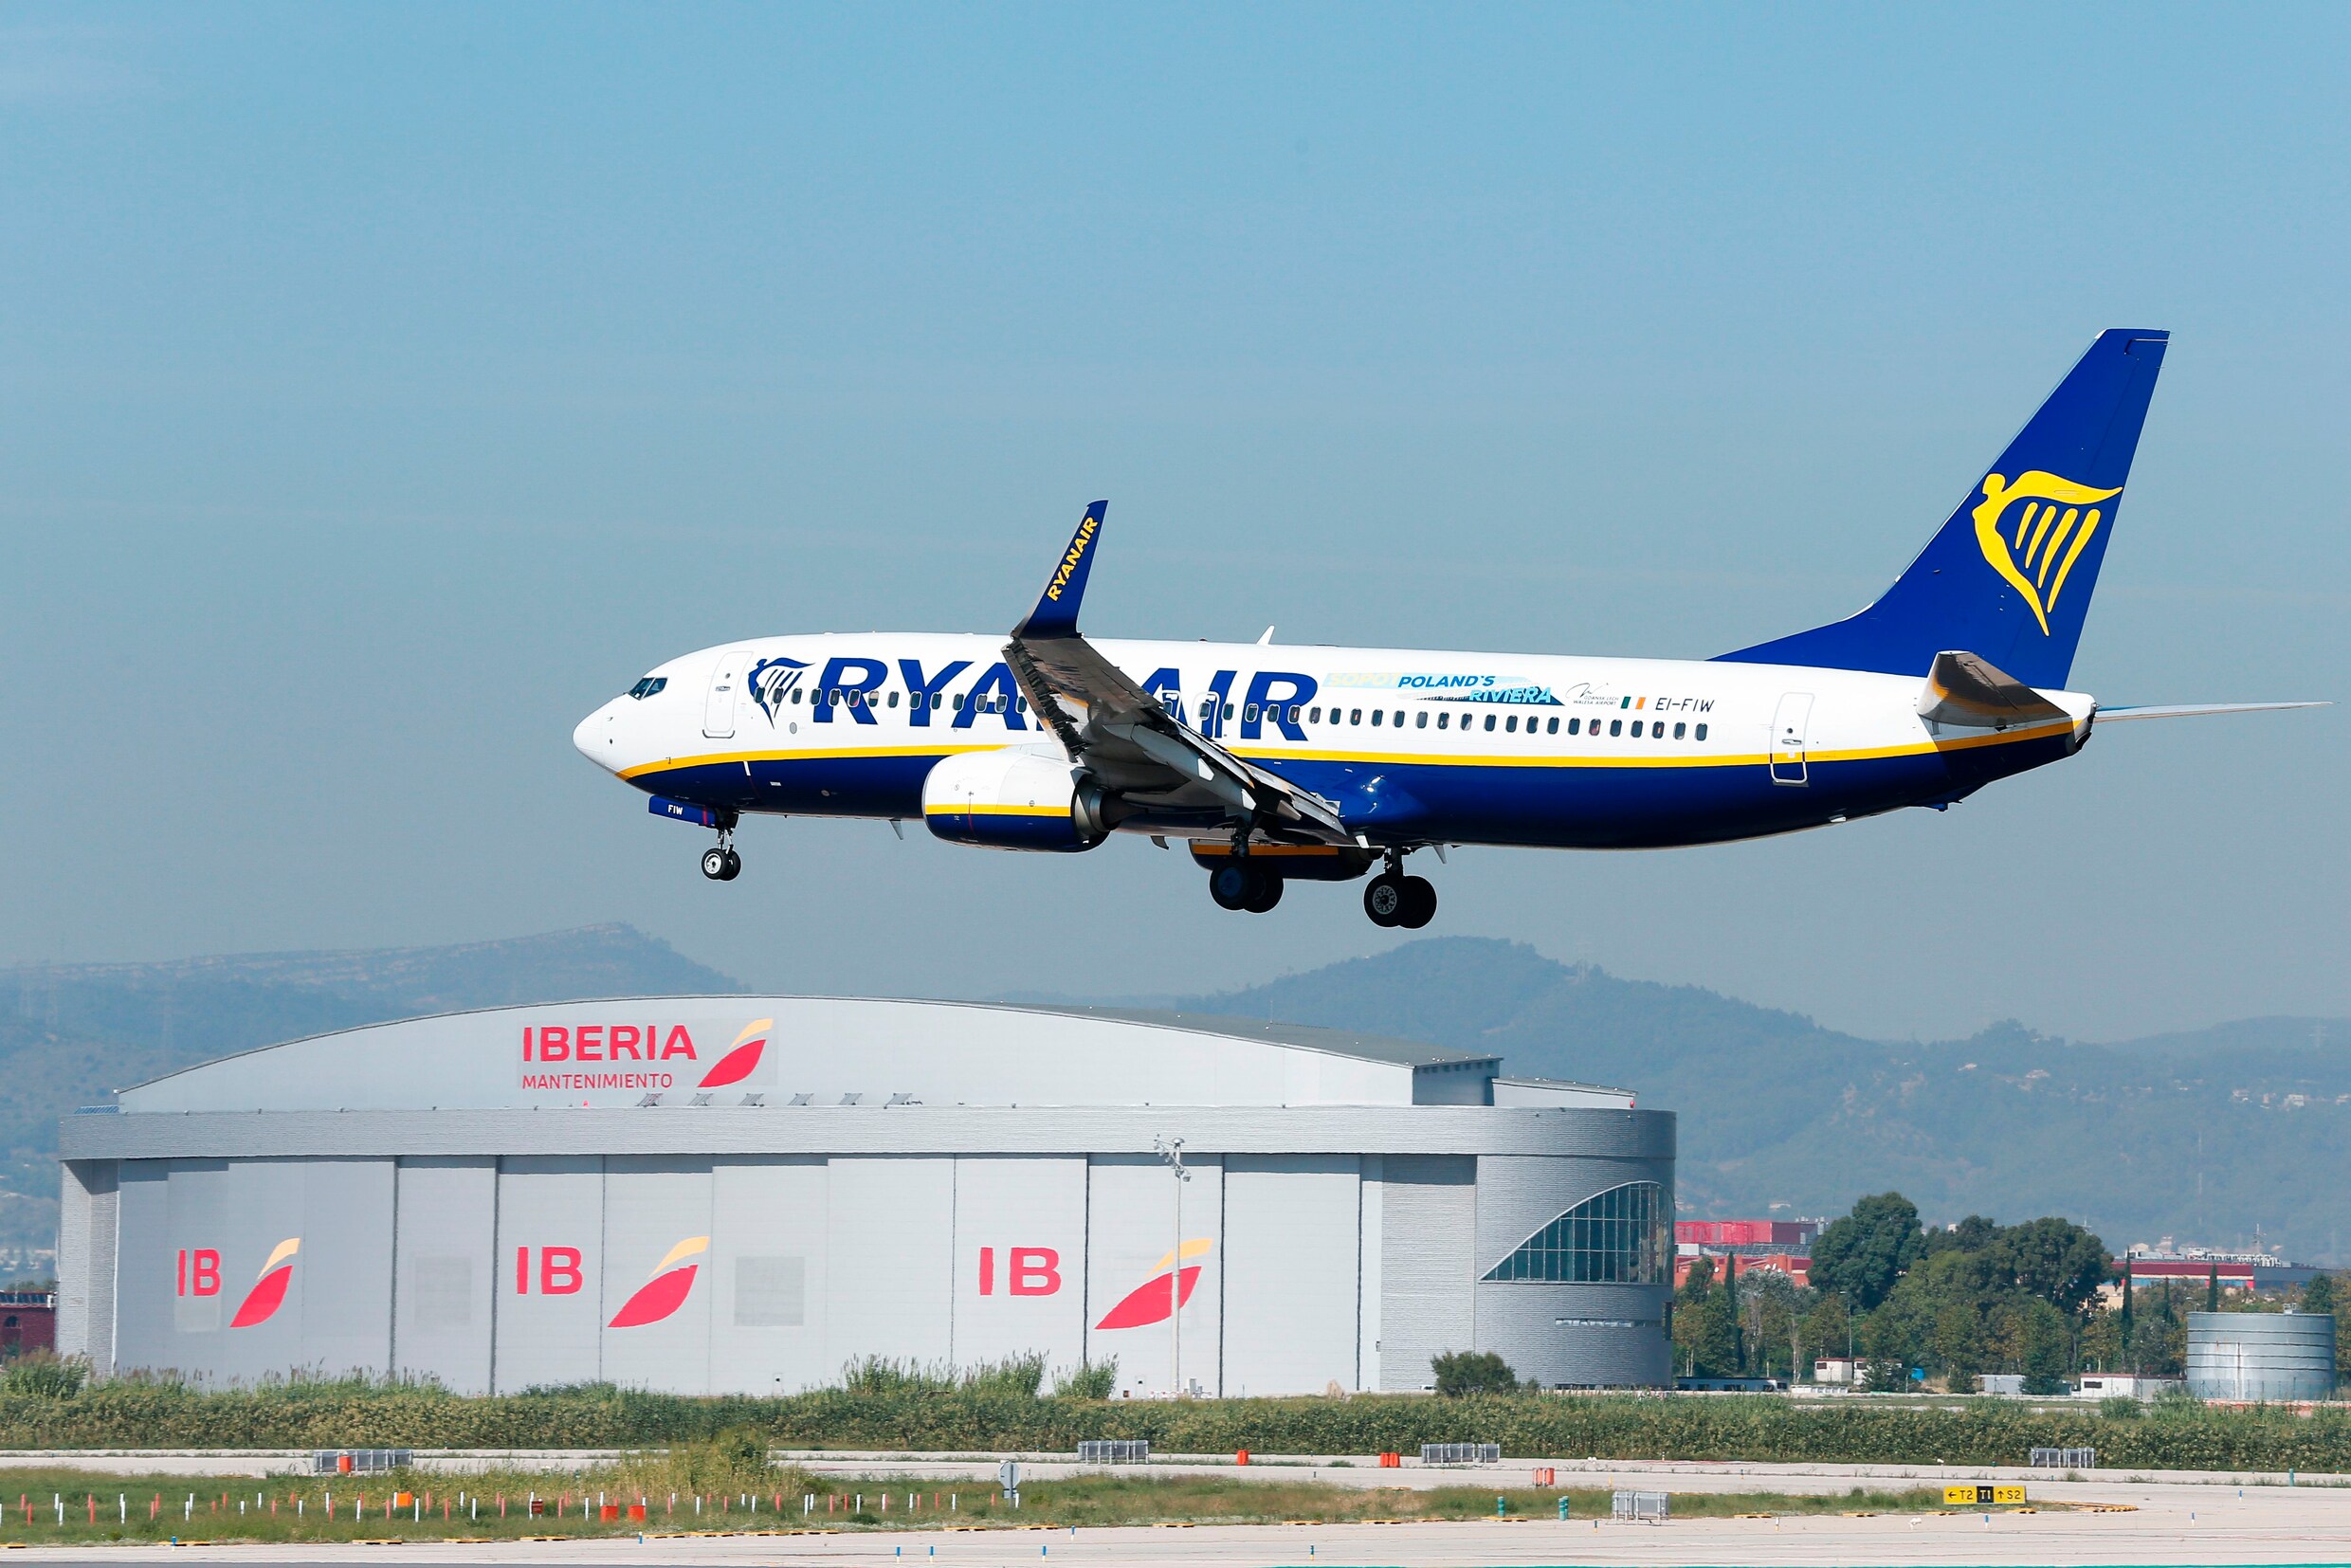 Nog meer stakingen mogelijk bij Ryanair op einde van het jaar, ook meer sluitingen van bases op komst